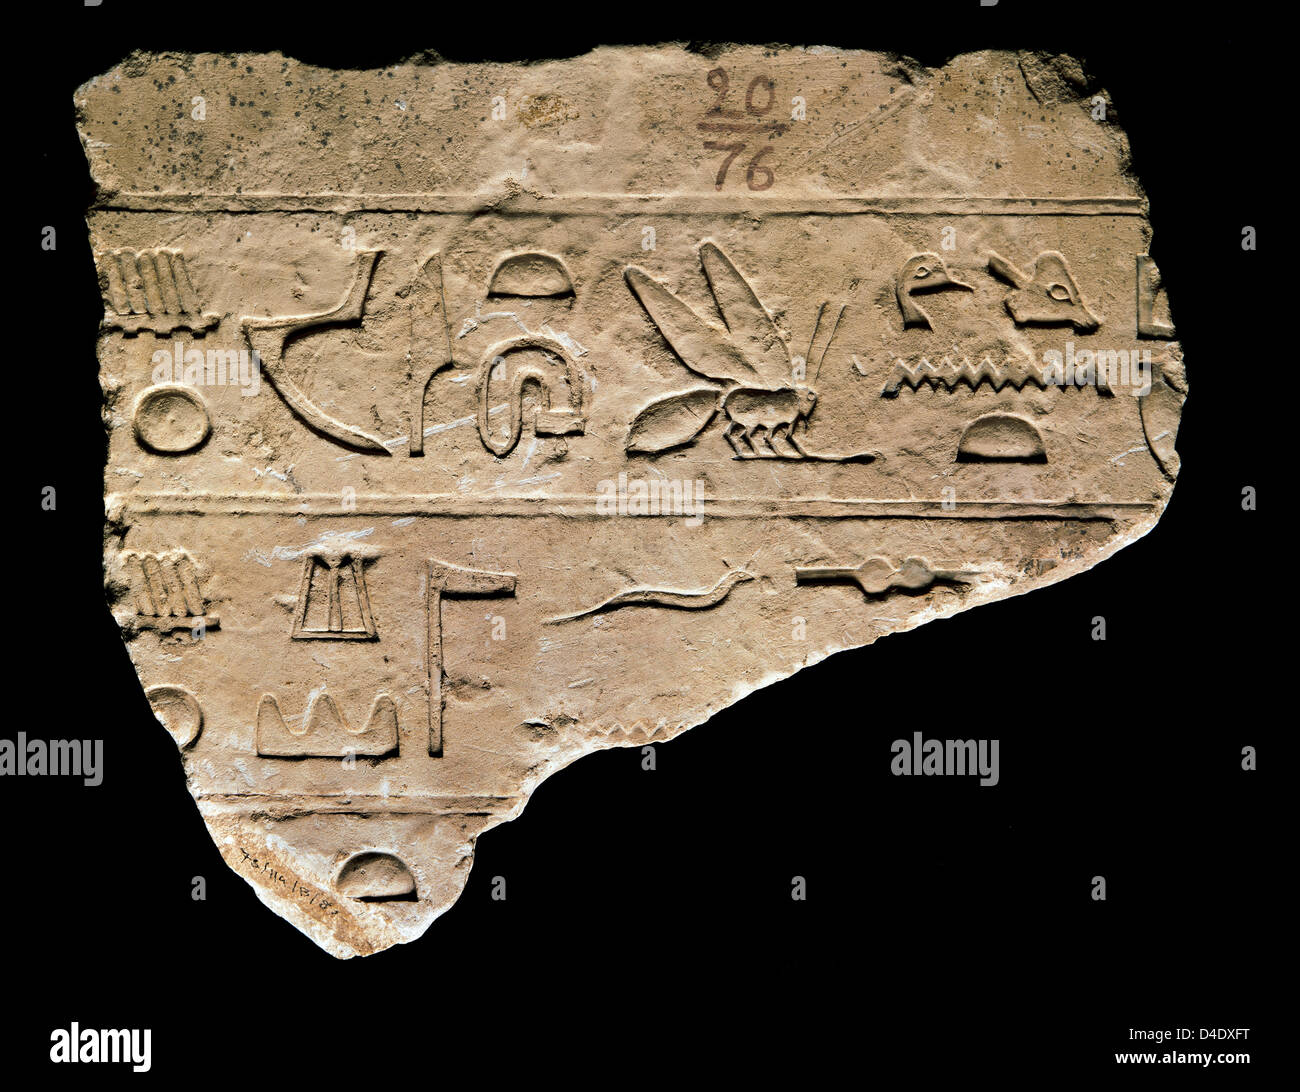 Arte Egizia Dettaglio di un hieroglyph. Incisi nella pietra. Museo Archeologico Nazionale. Madrid. Spagna. Foto Stock